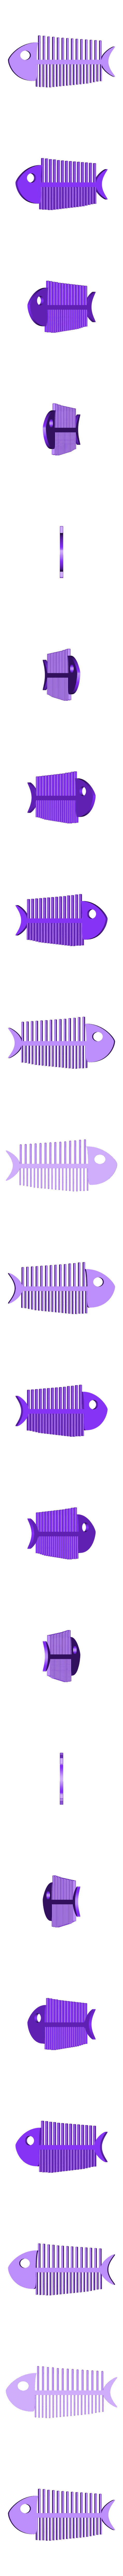 fish bone comb.stl Download STL file Fish Bone • 3D printable model, delukart